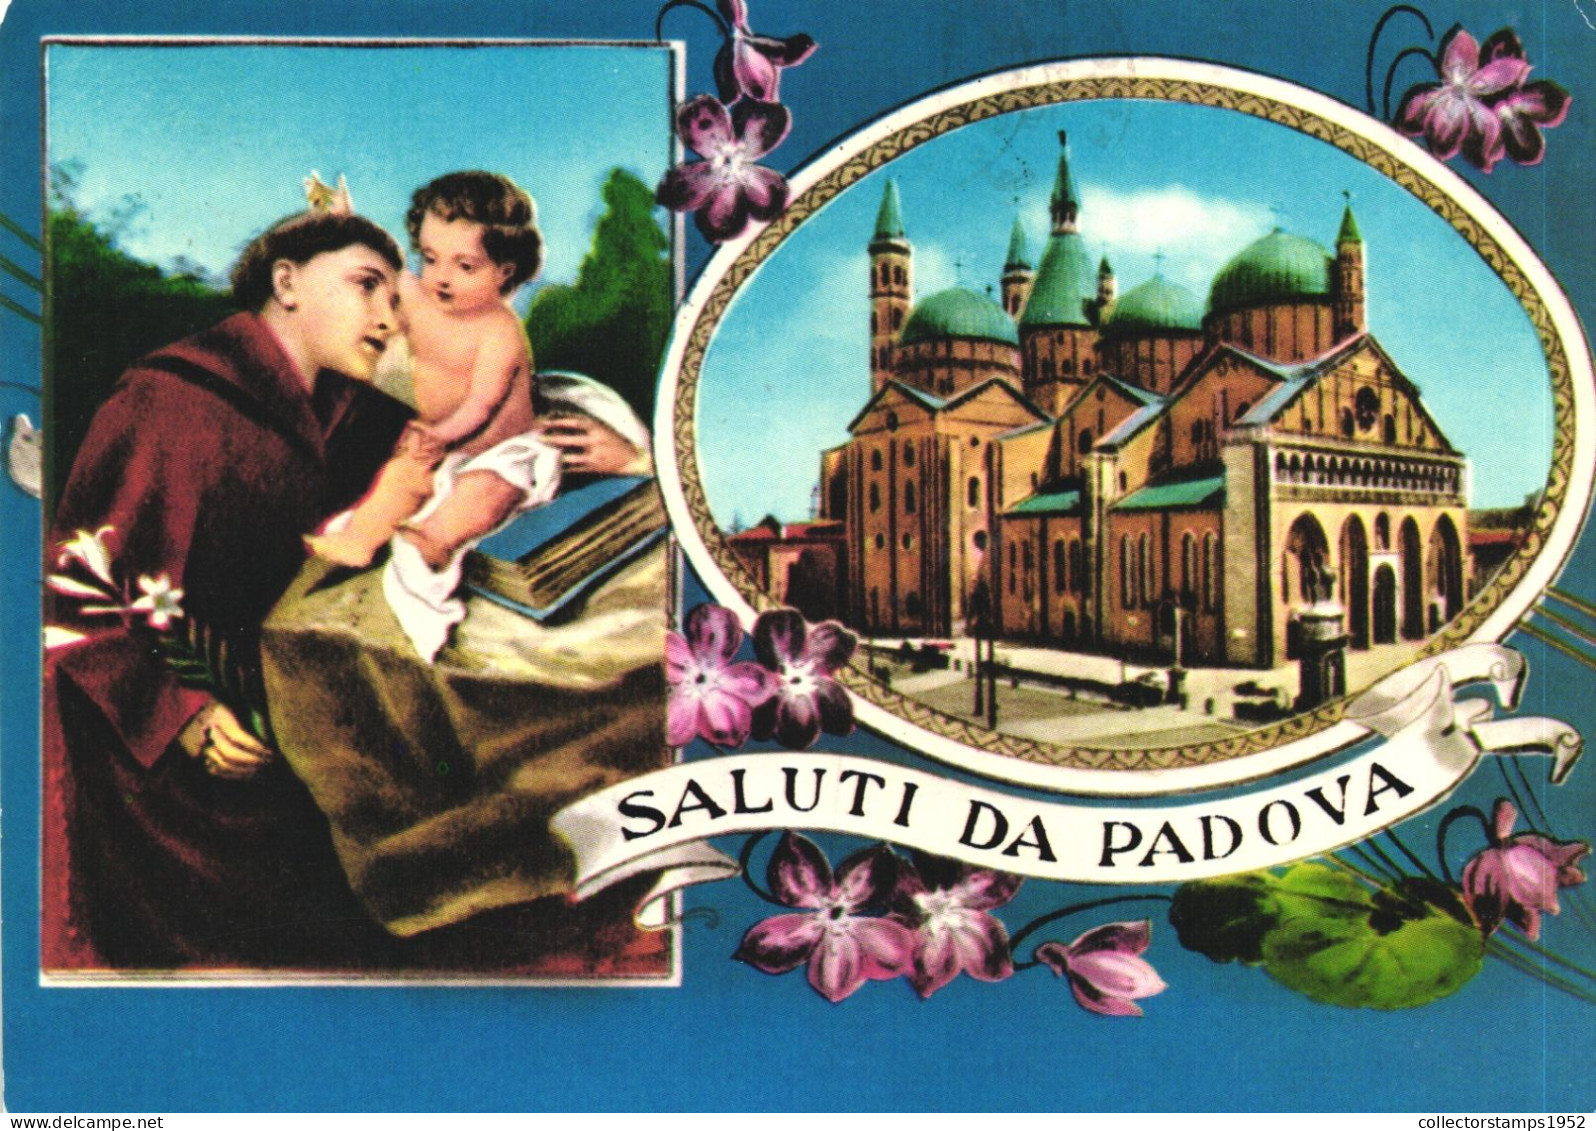 PADOVA, PADUA, VENETO, MULTIPLE VIEWS, SAINT, BABY JESUS, CHURCH, ARCHITECTURE, FLOWERS, ITALY, POSTCARD - Padova